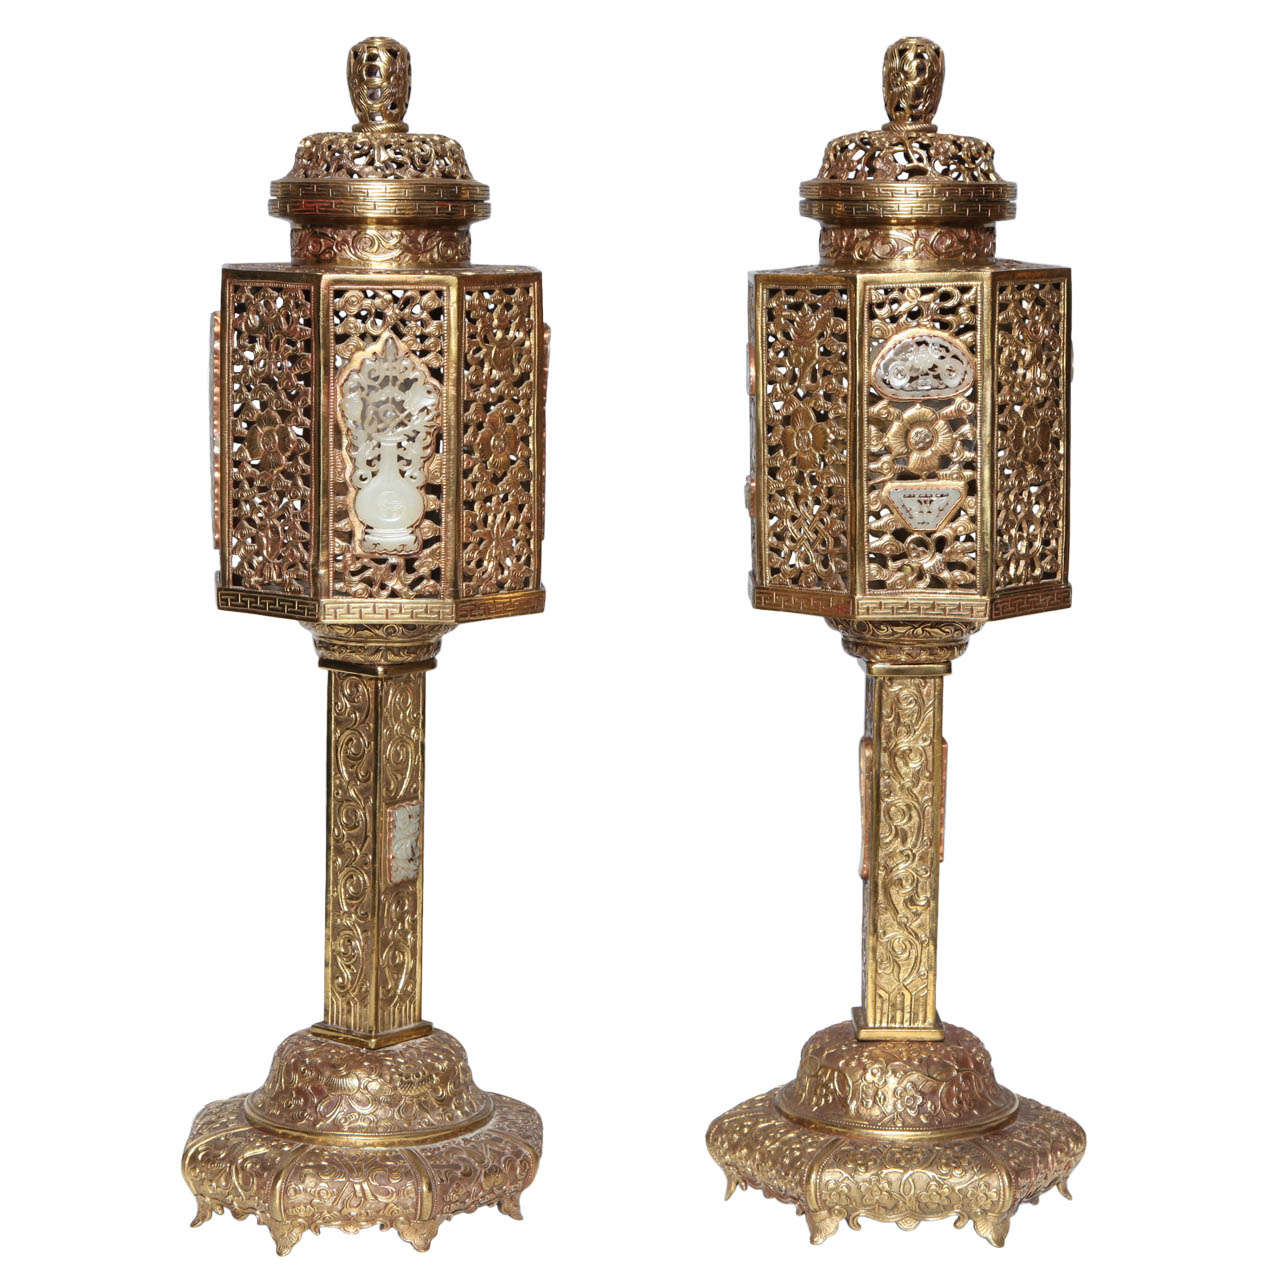 Paire de lanternes chinoises en bronze doré de style traditionnel avec plaques en jade incrustées